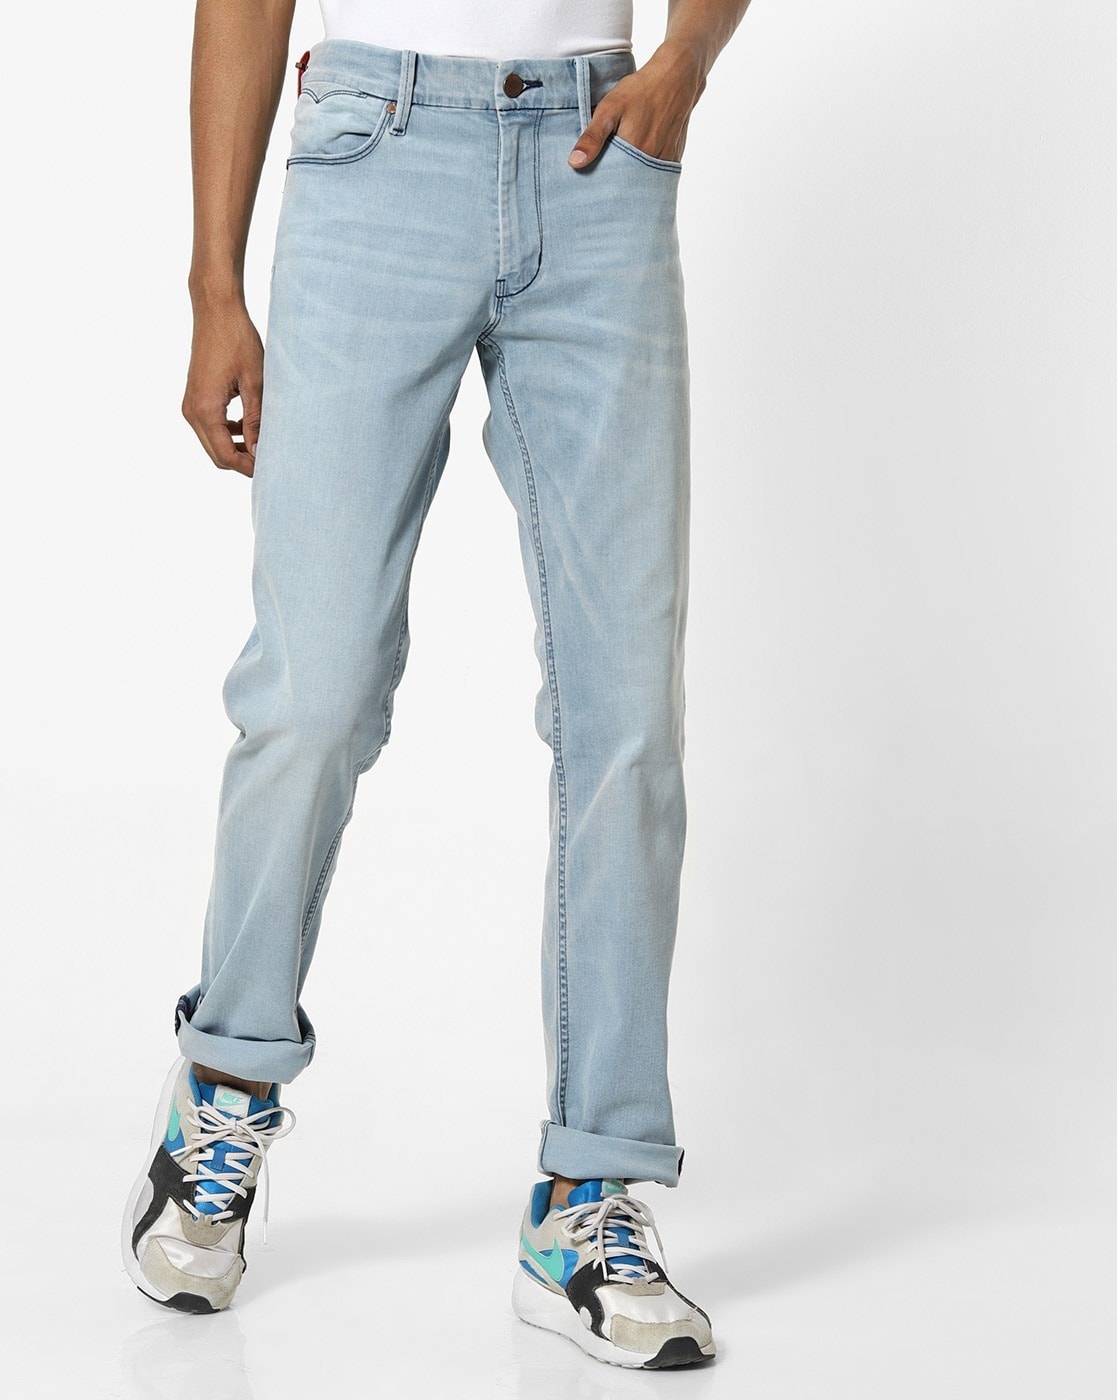 levis jeans redloop